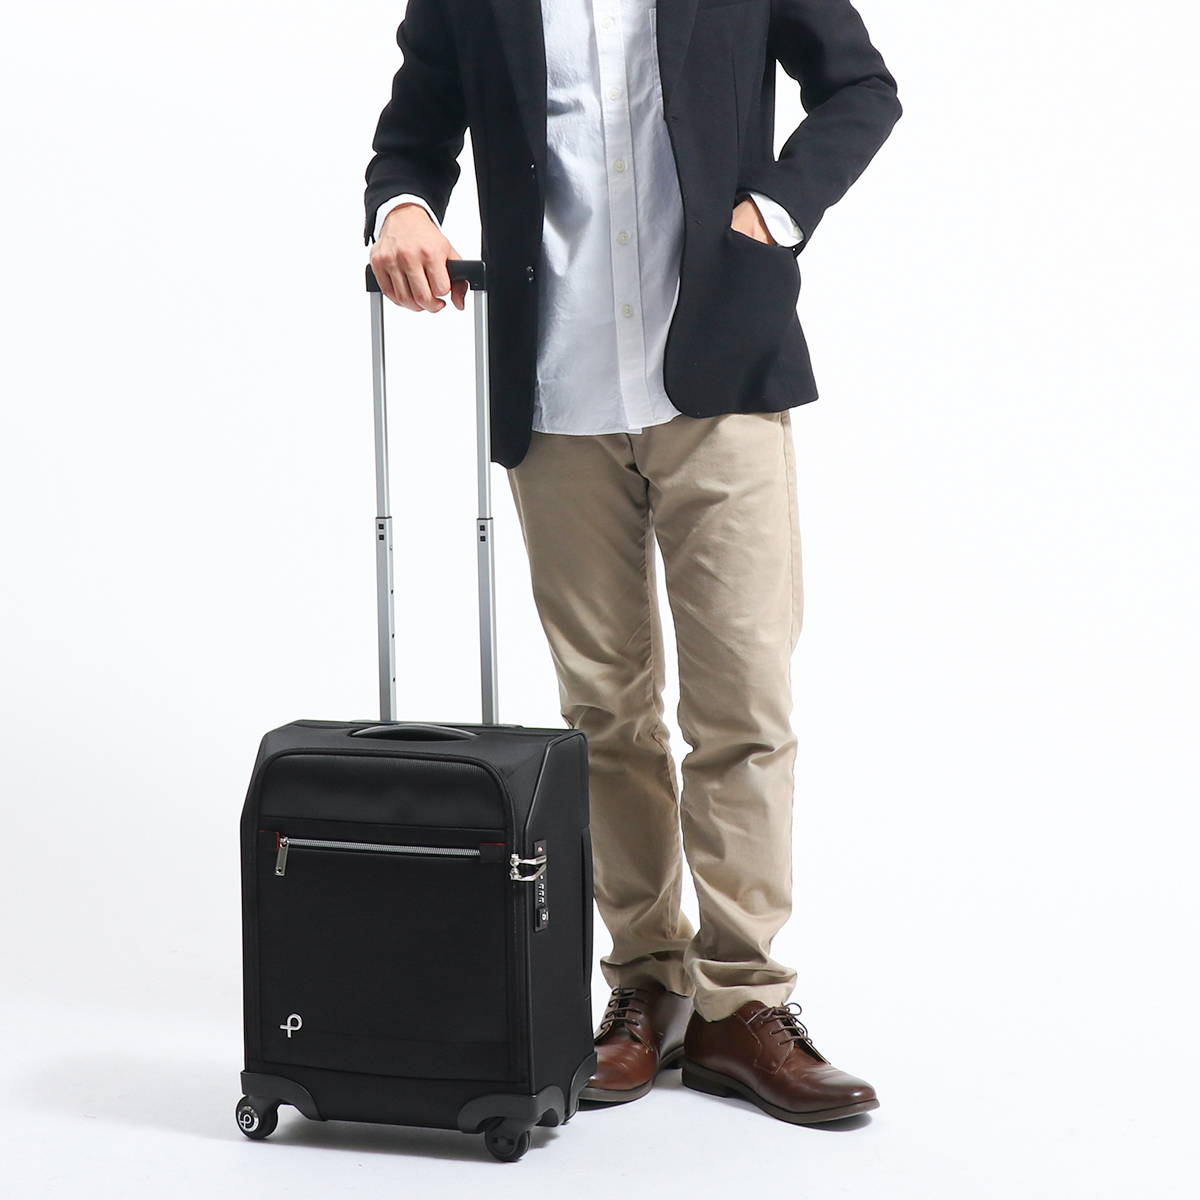 プロテカ スーツケース 日本製 マックスパスソフト3 機内持込可 23L 2kg 1~2泊 コインロッカーサイズ ストッパー付 12836 -  www.ritmo-sereno.com